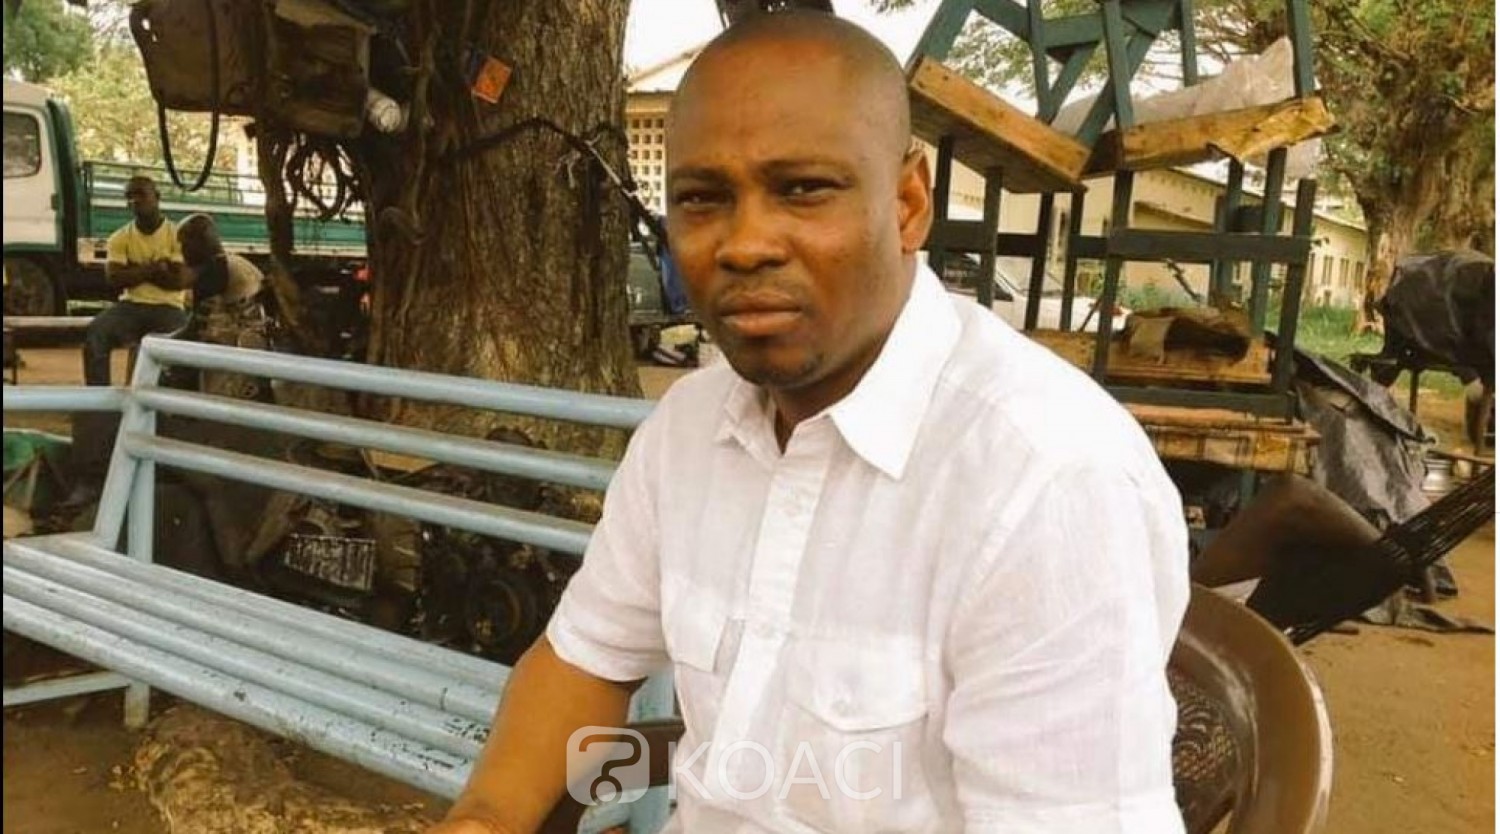 Côte d'Ivoire:  Rigobert Soro et un proche d'Affoussiata détenus au secret et aucune date d'audience connue selon le collectif d'avocat